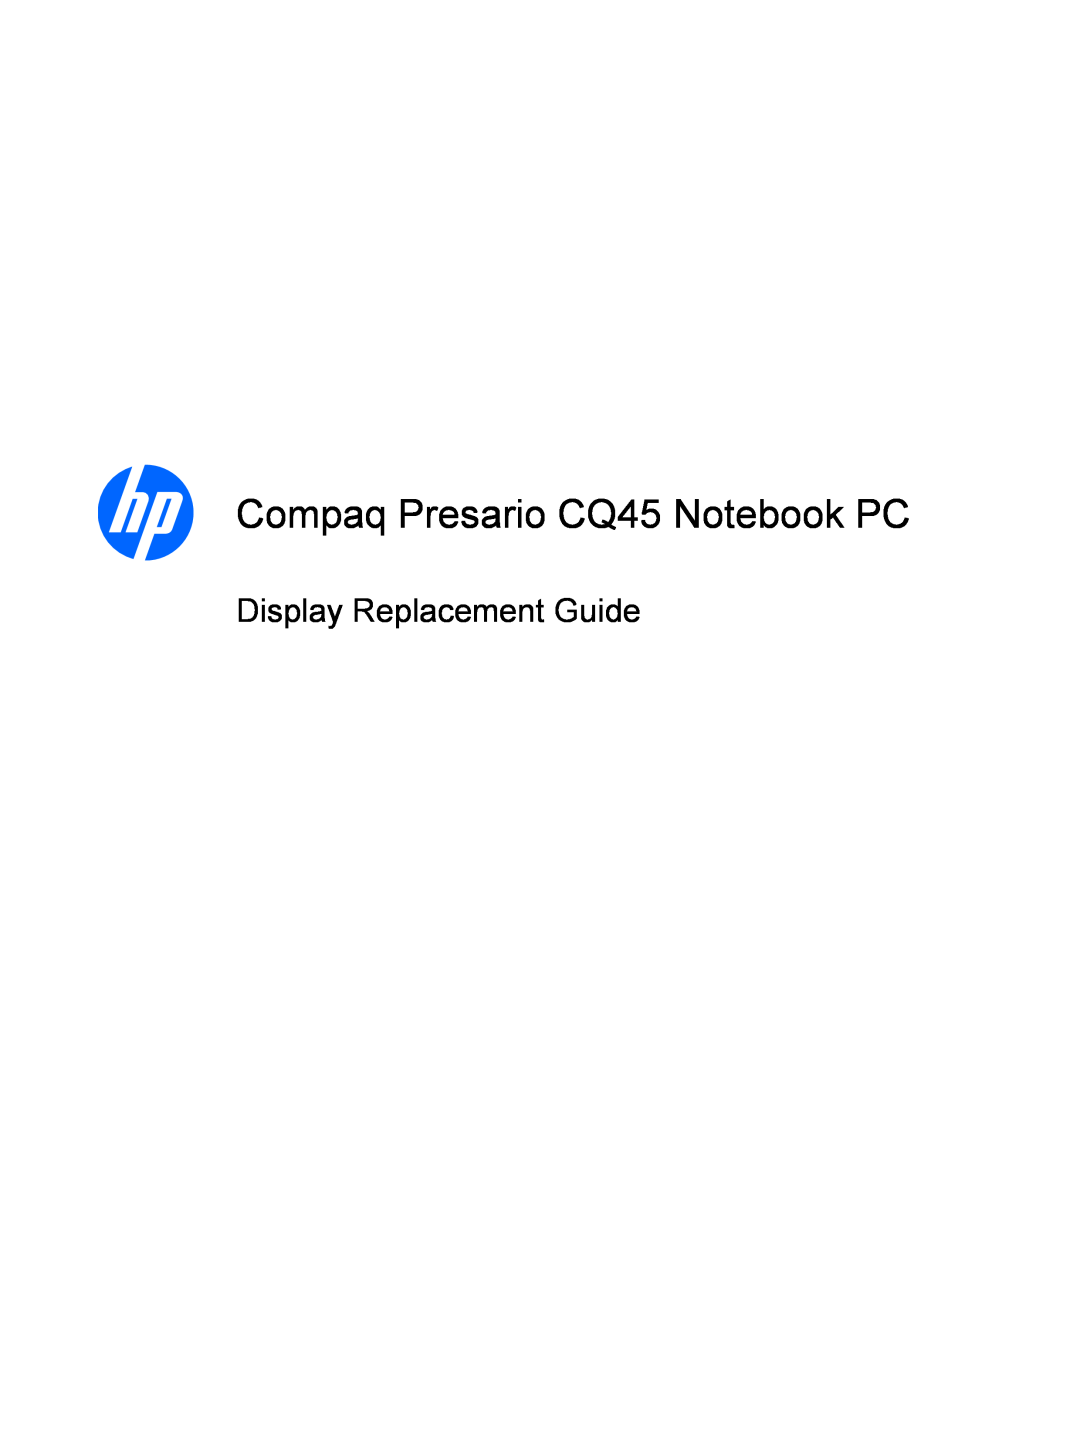 HP CQ45-111TX, CQ45-112TX, CQ45-111AU, CQ45-109TU manual Compaq Presario CQ45 Notebook PC, Display Replacement Guide 